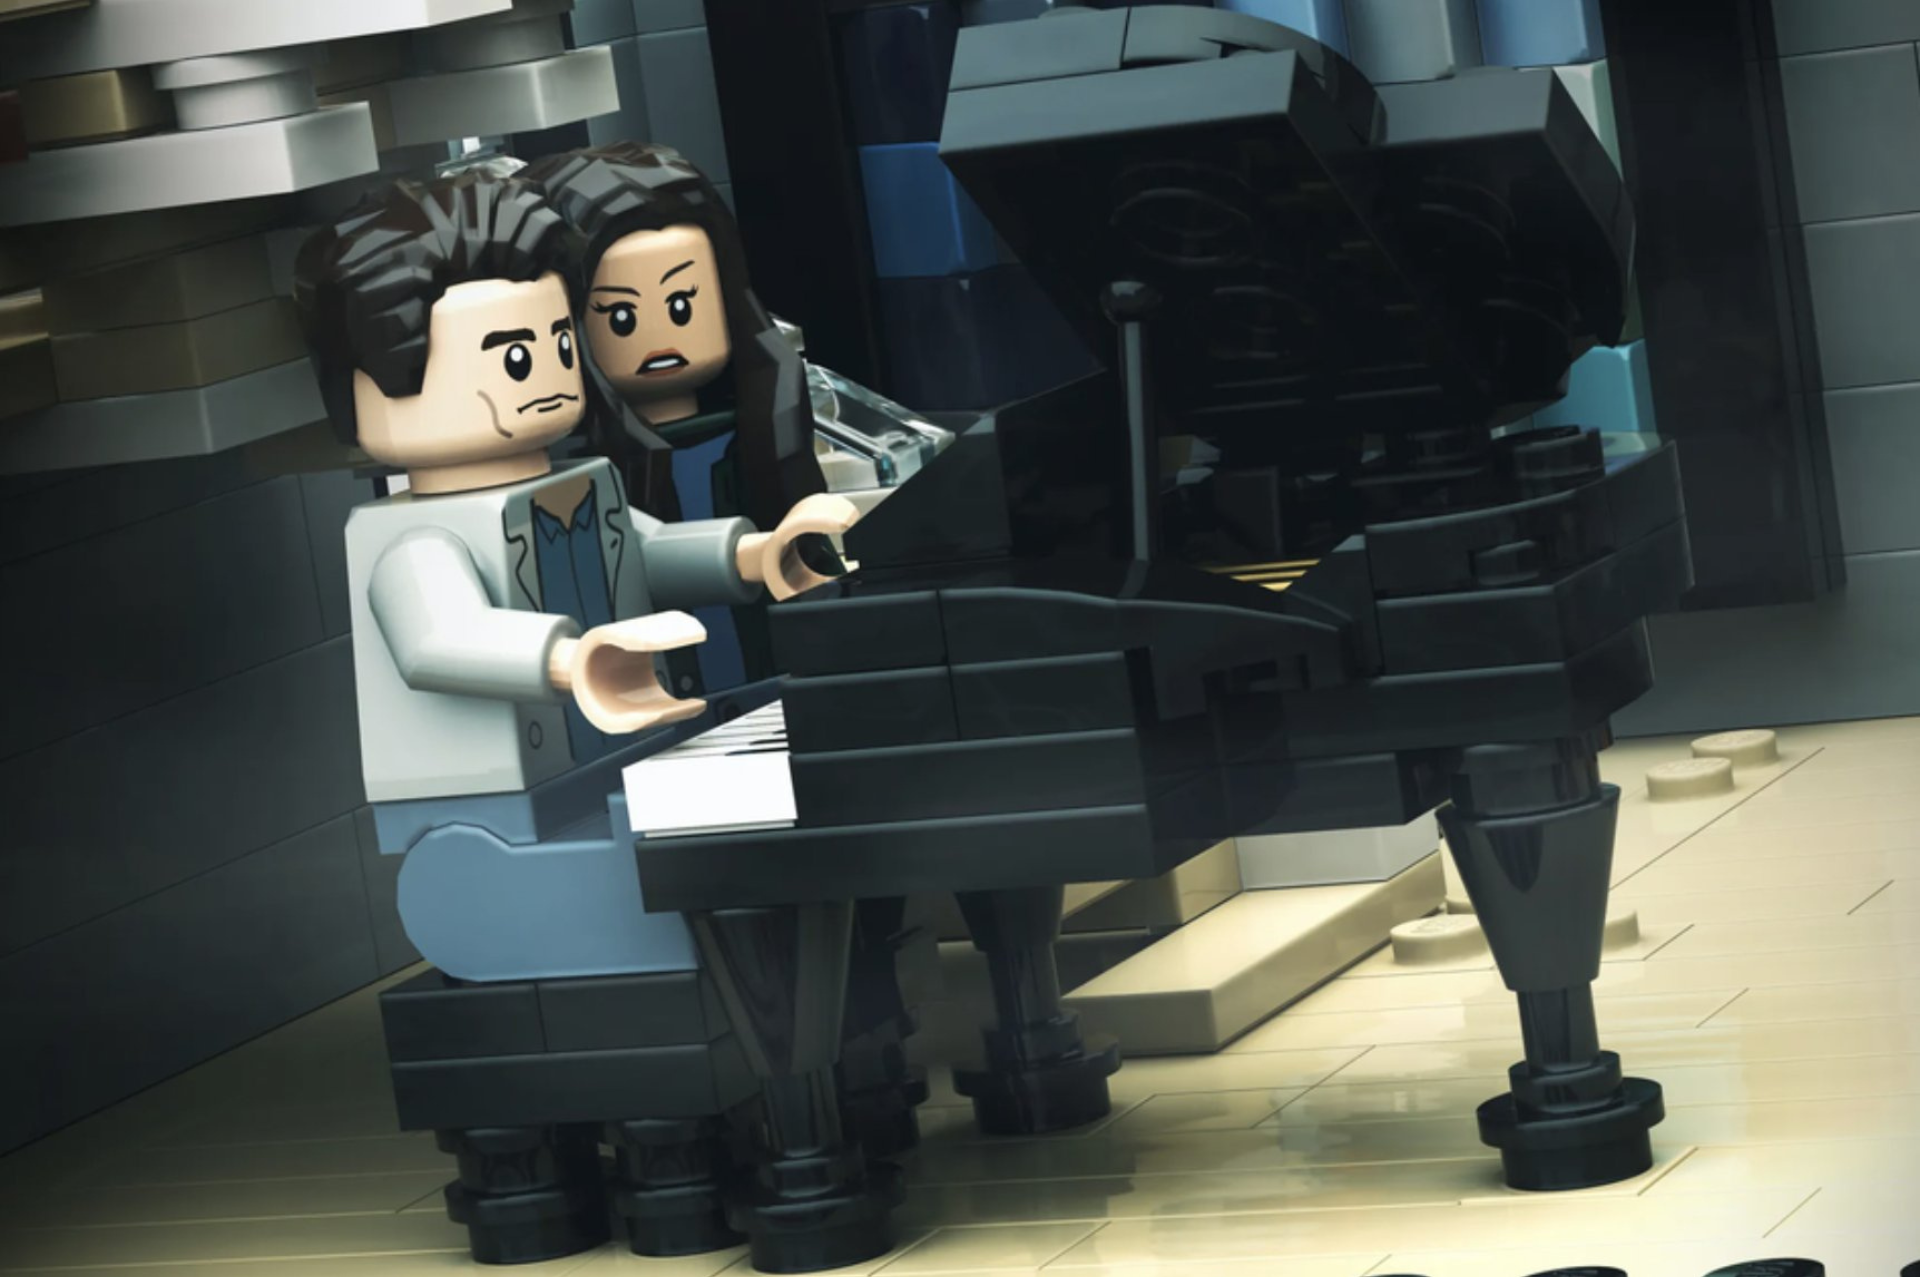 LEGO Twilight: La Casa Cullen renace en bloques